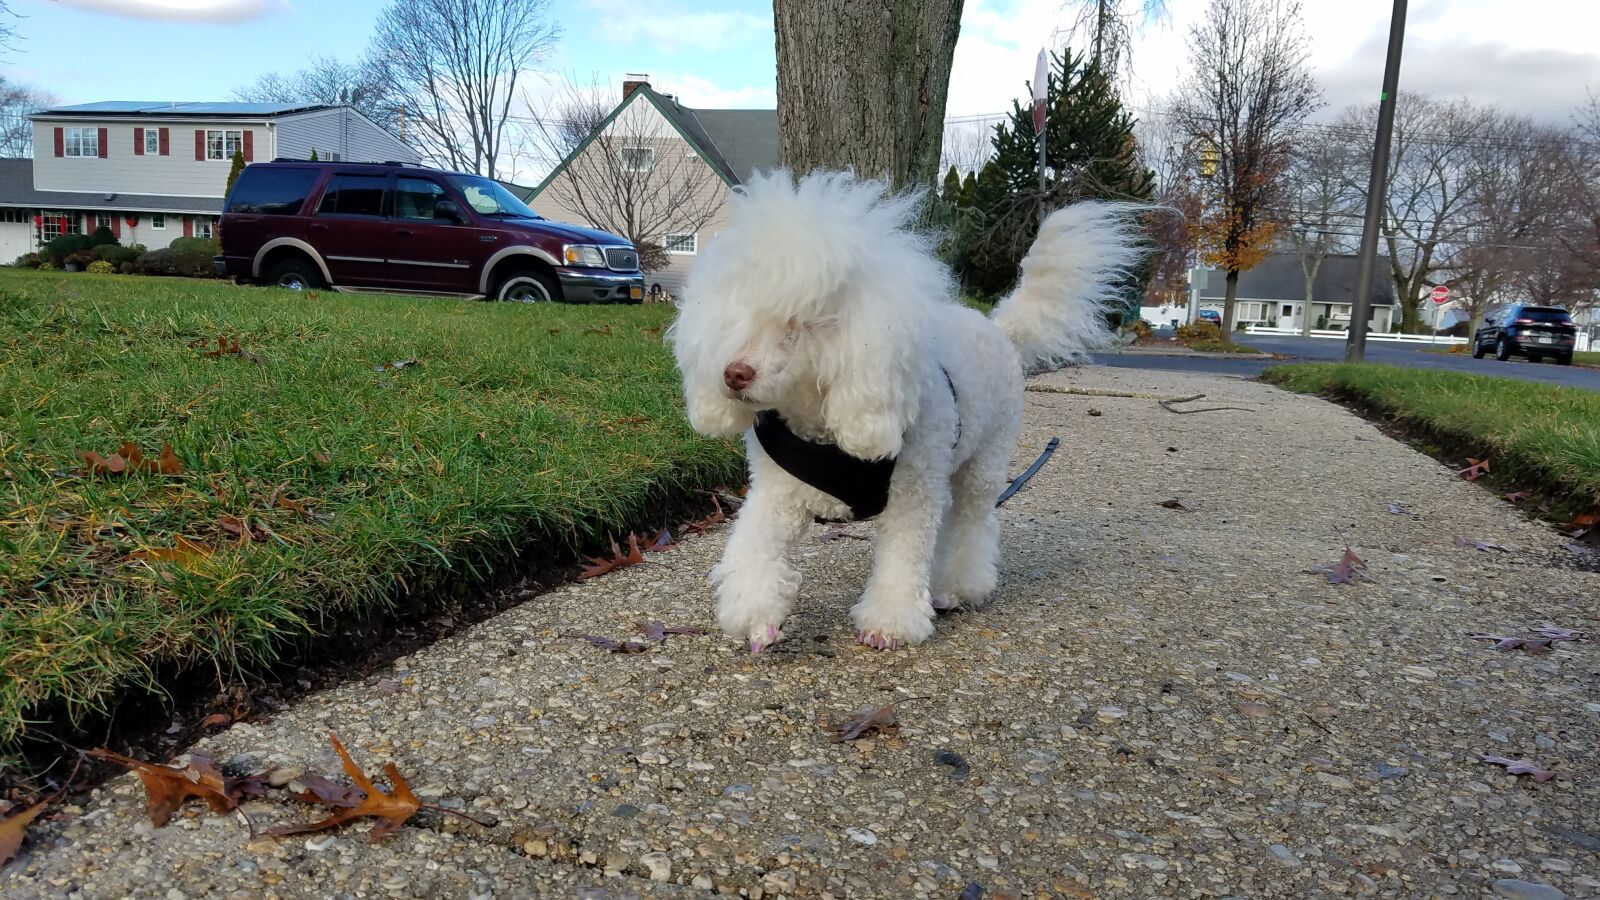 Samsung Galaxy S7 Edge sample photo. White dog, dog, cute photography